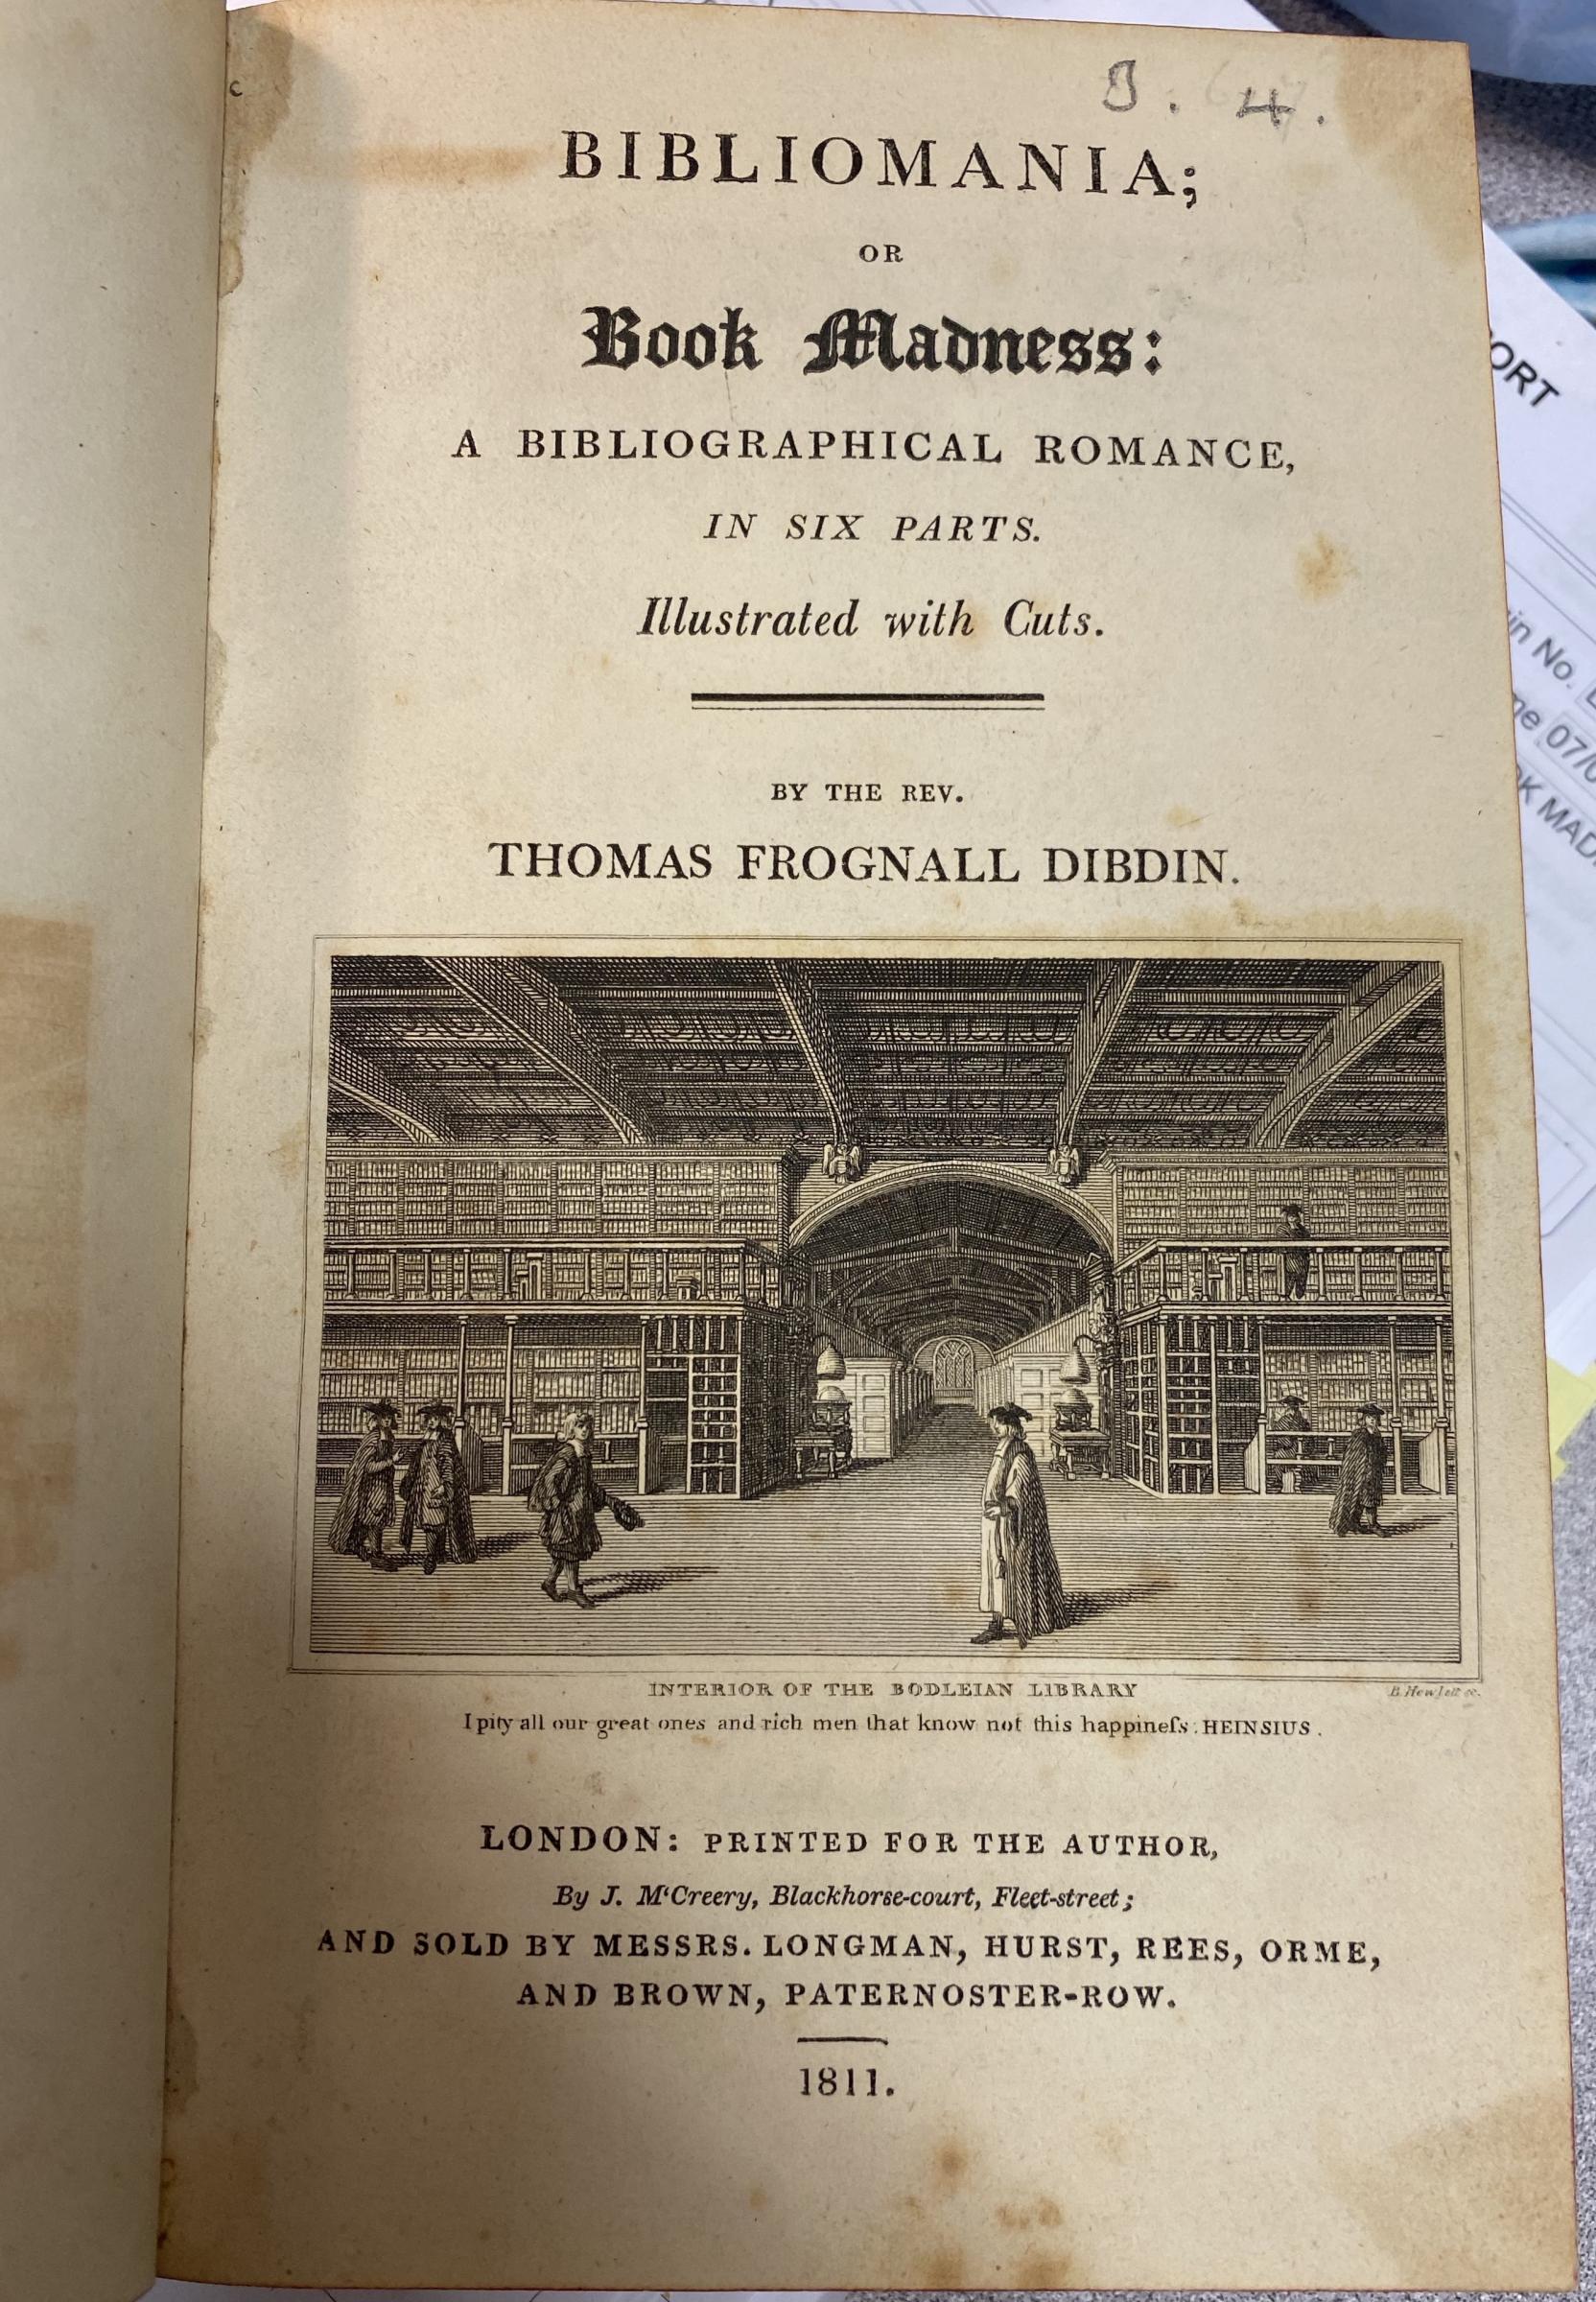 Thomas Frognall Dibdin (British, 1776-1847)